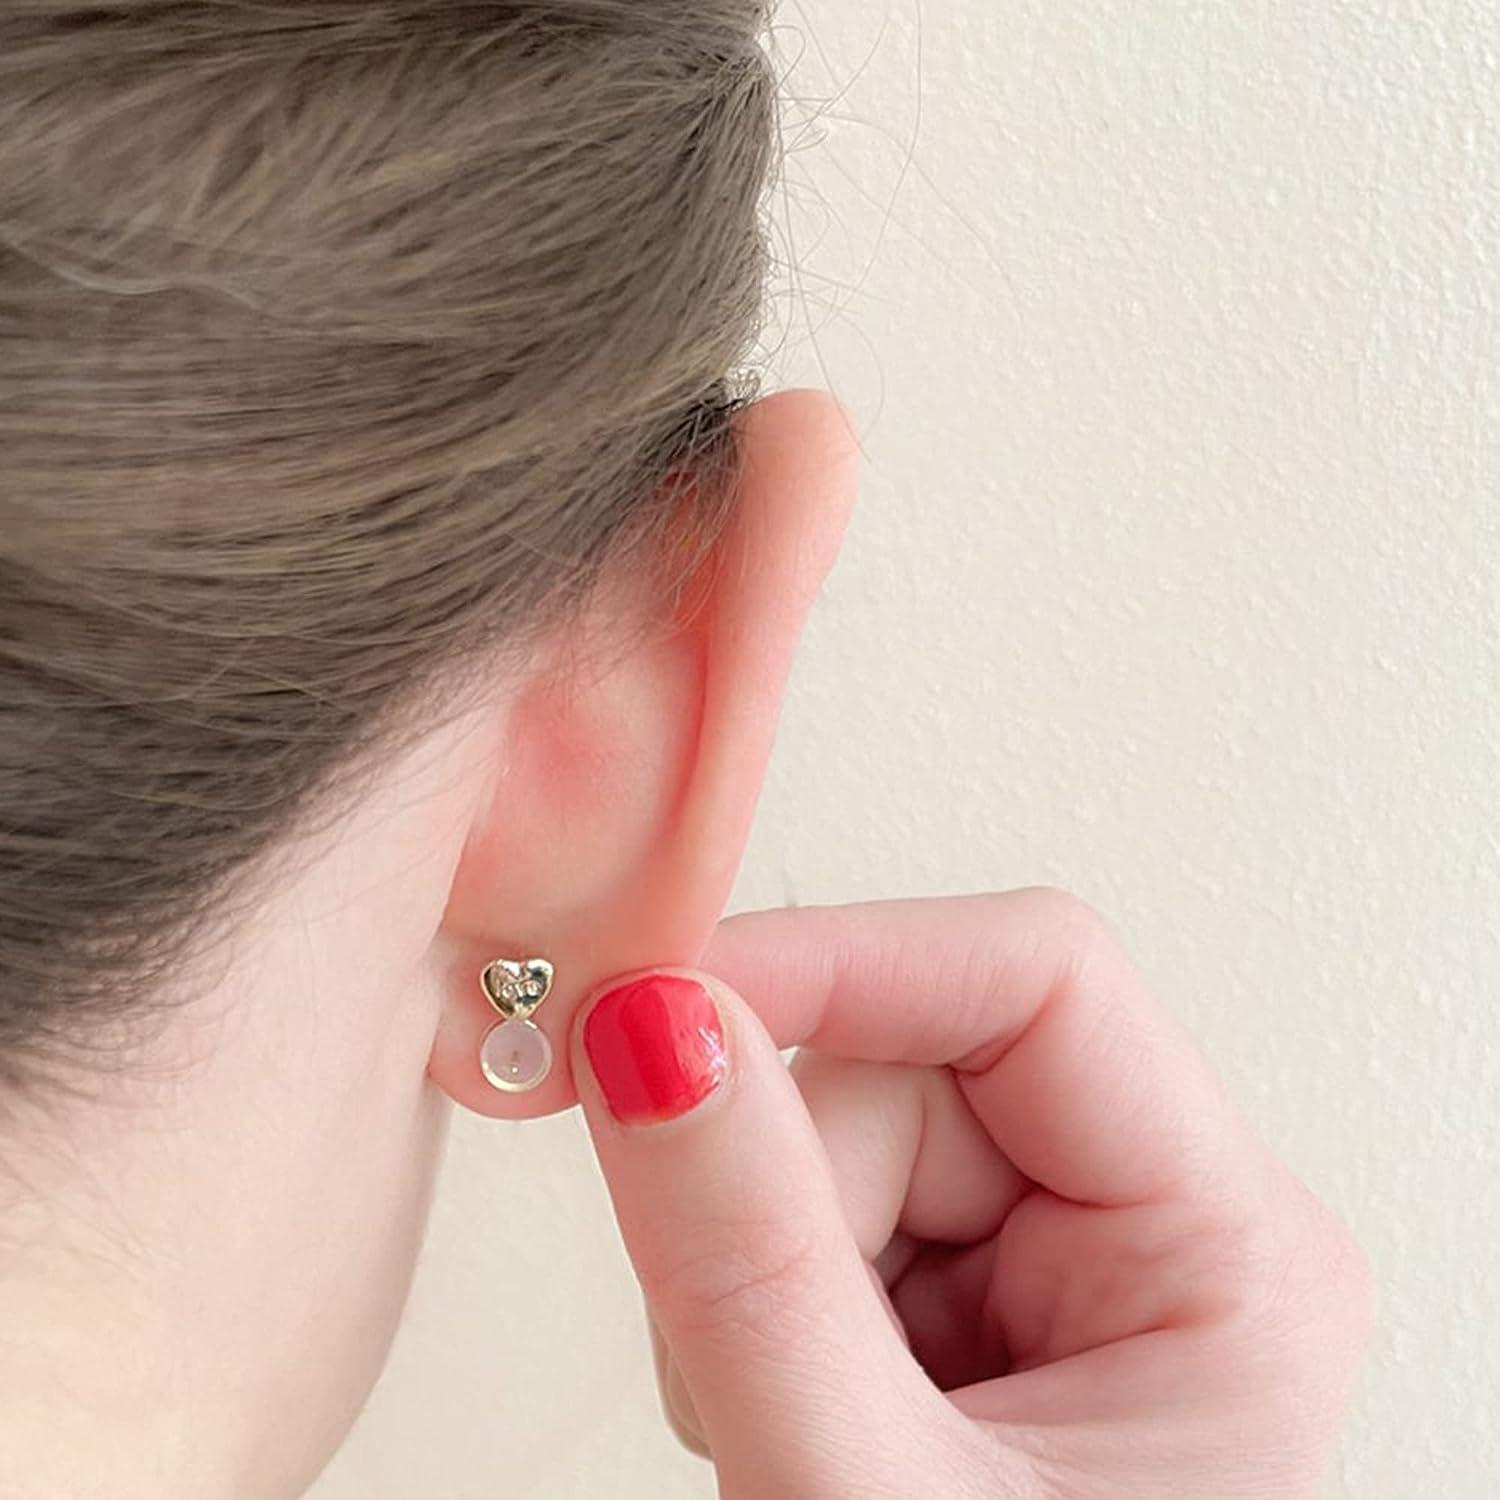 Earring Backs For Heavy Earrings